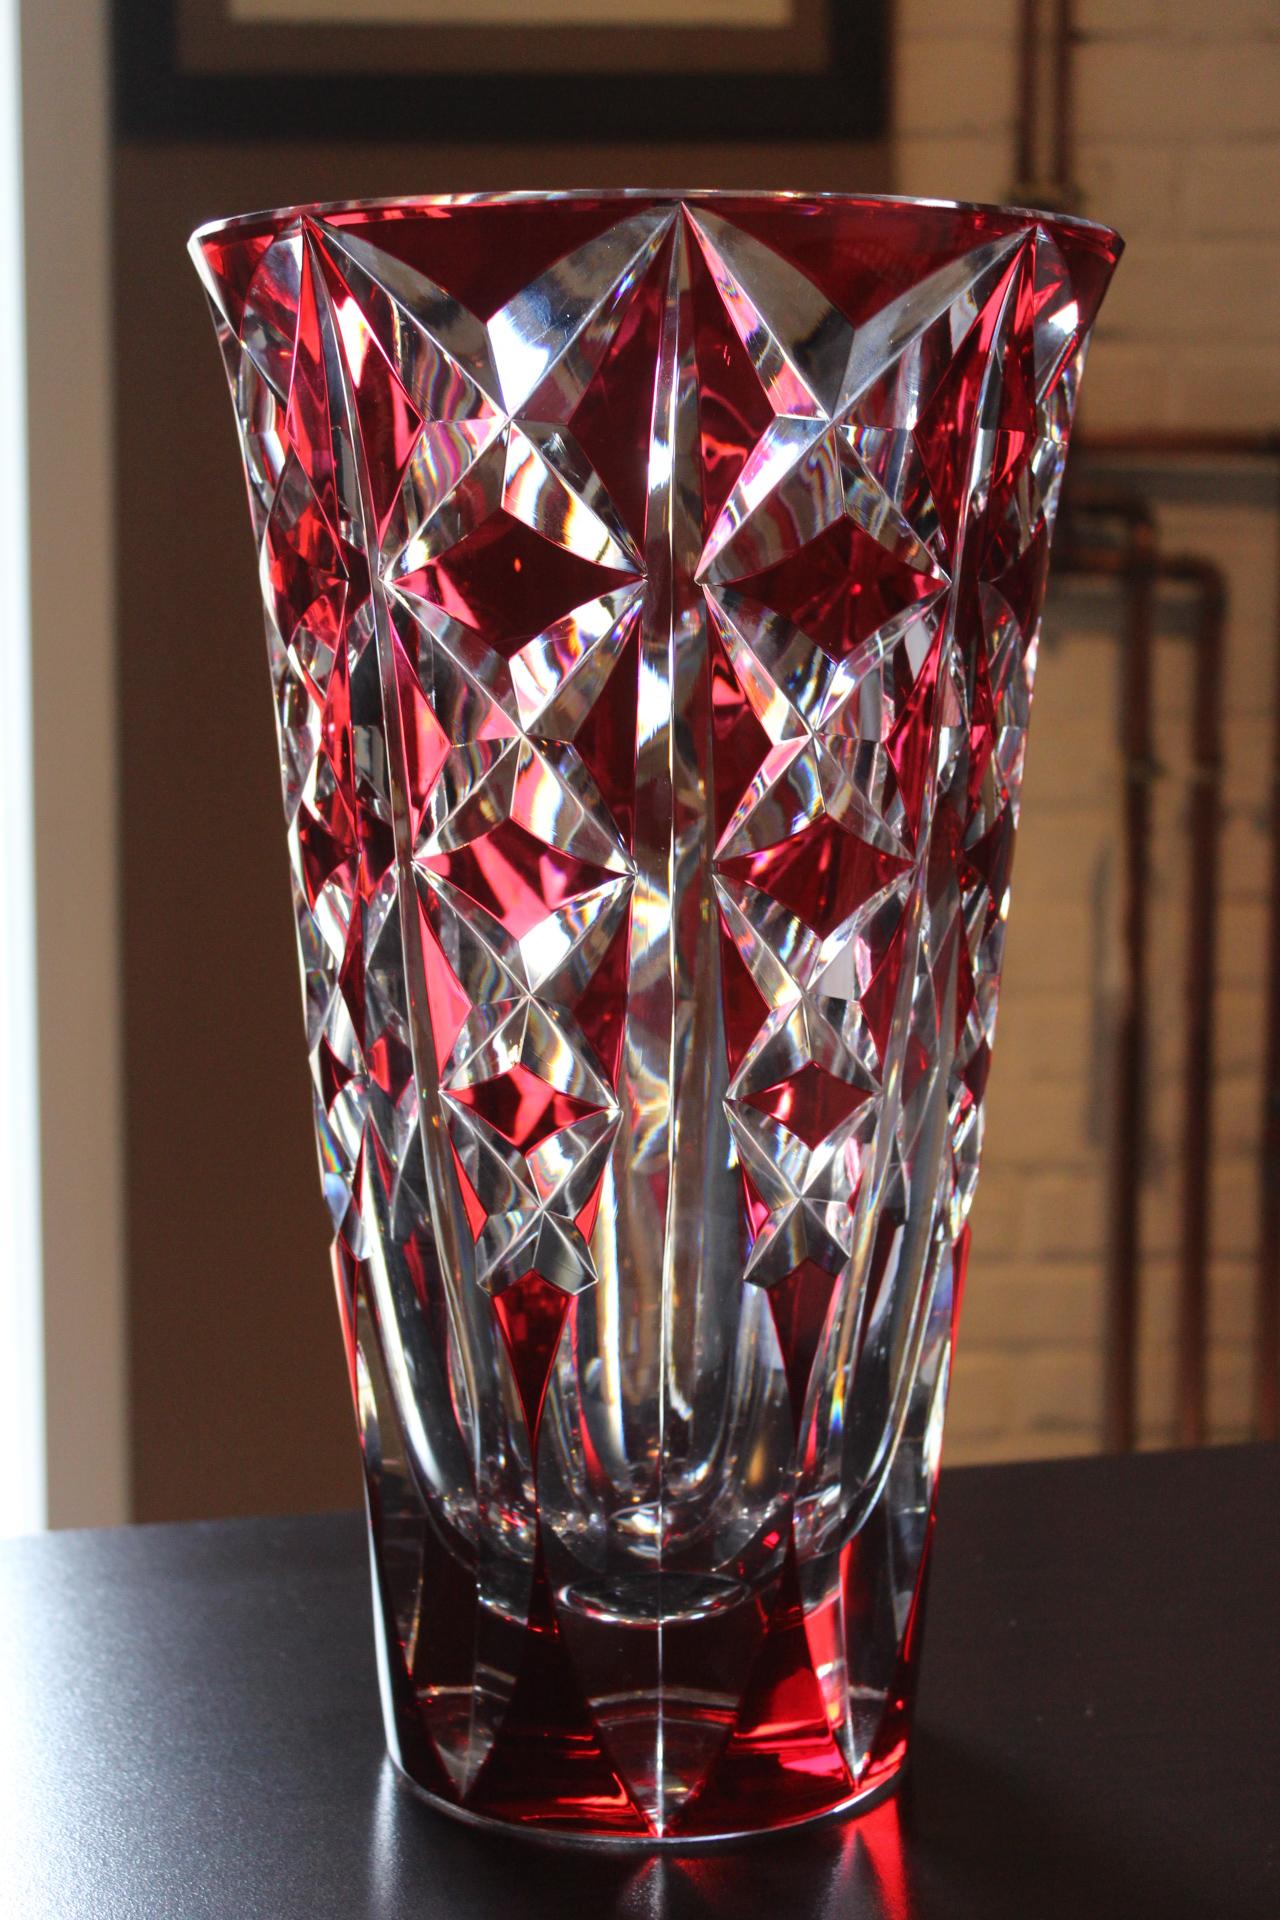 Die Cristalleries de Saint-Louis bescheinigen hiermit, dass ihre Glasmeister und Schleifer mit ihrem über vierhundertjährigen Fachwissen das Kristall geblasen, geformt und dekoriert haben, um diese außergewöhnliche Vase herzustellen.
Dieses Stück